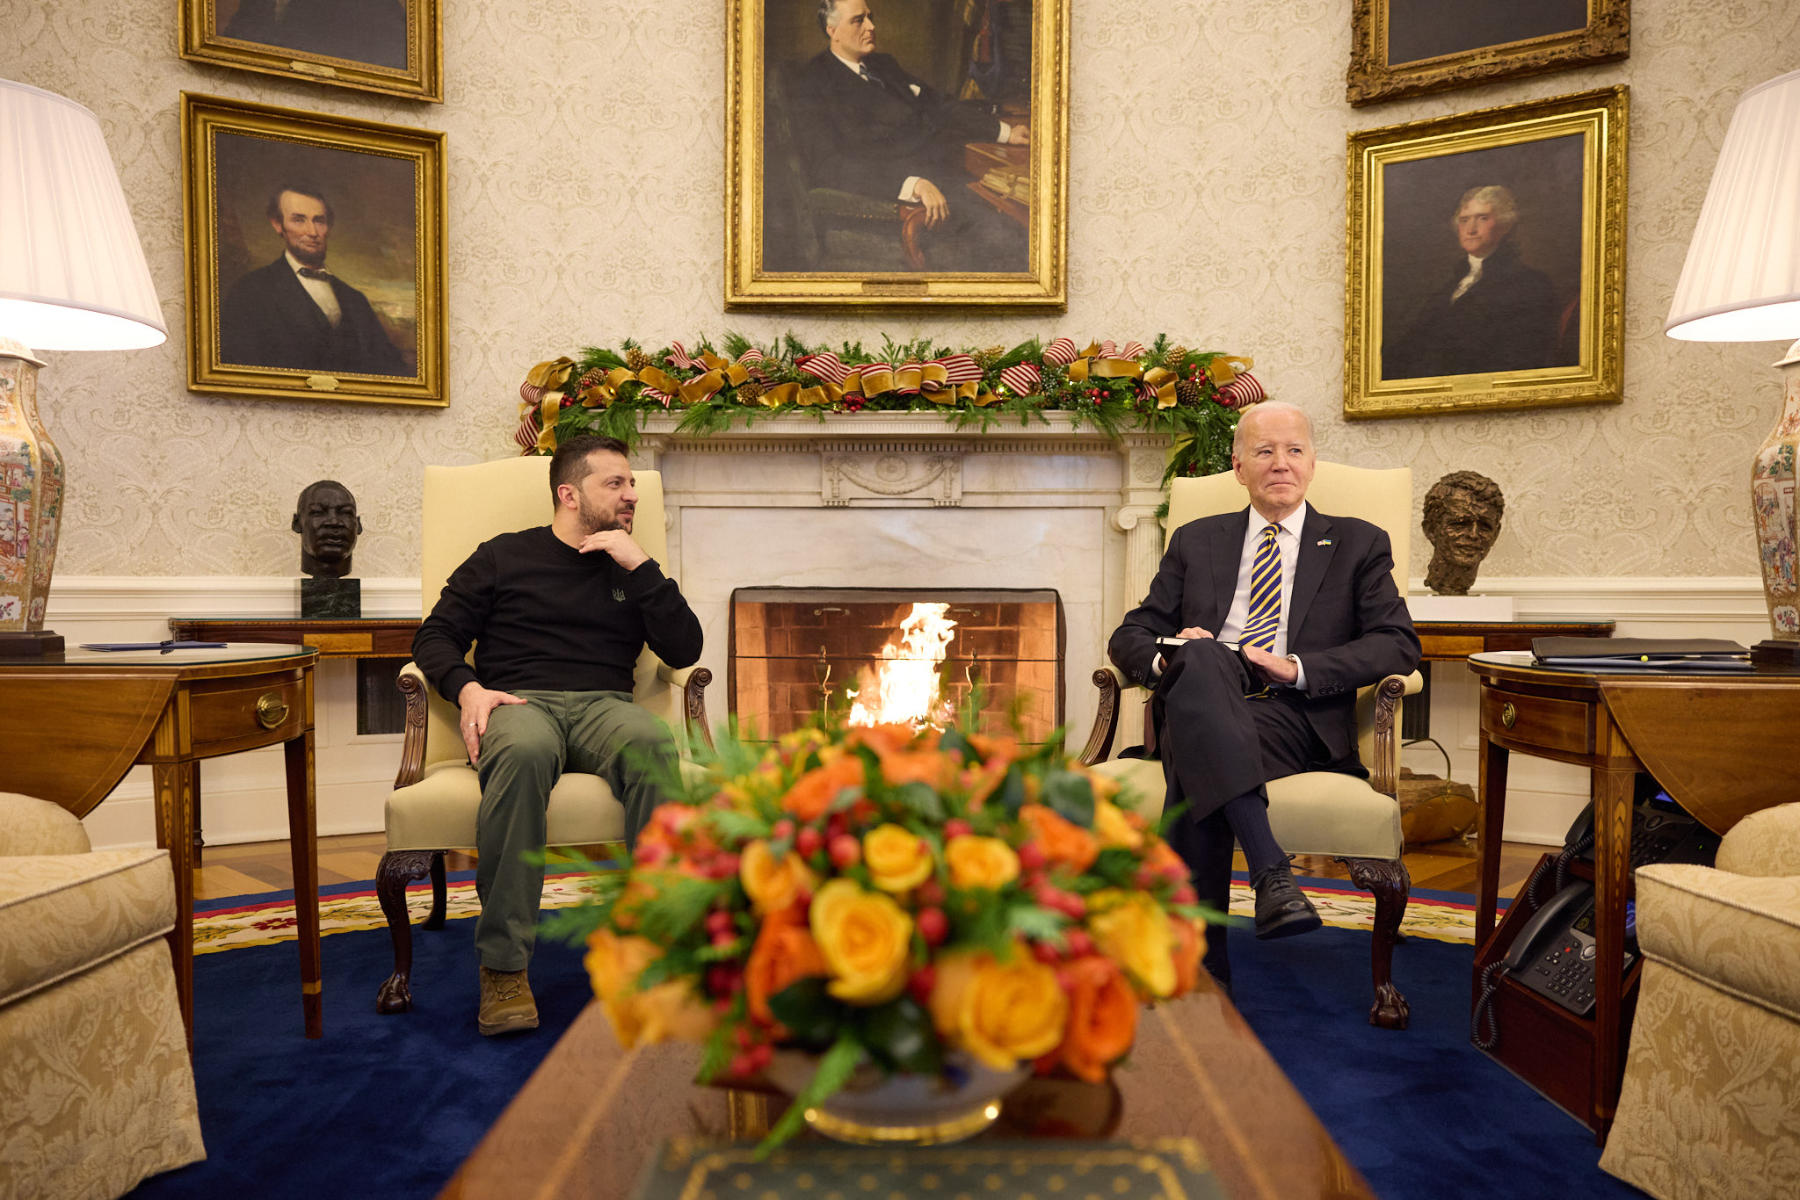 Prezydent Joe Biden spotkał się 12 grudnia w Waszyngtonie z prezydentem Ukrainy Wołodymyrem Zełenskim. Obaj przywódcy sprzeciwili się opinii, że ukraińska kontrofensywa utknęła w martwym punkcie. Prezydent USA zapowiedział, że pomoc dla Ukrainy będzie zapewniana „tak długo, jak będziemy mogli” .